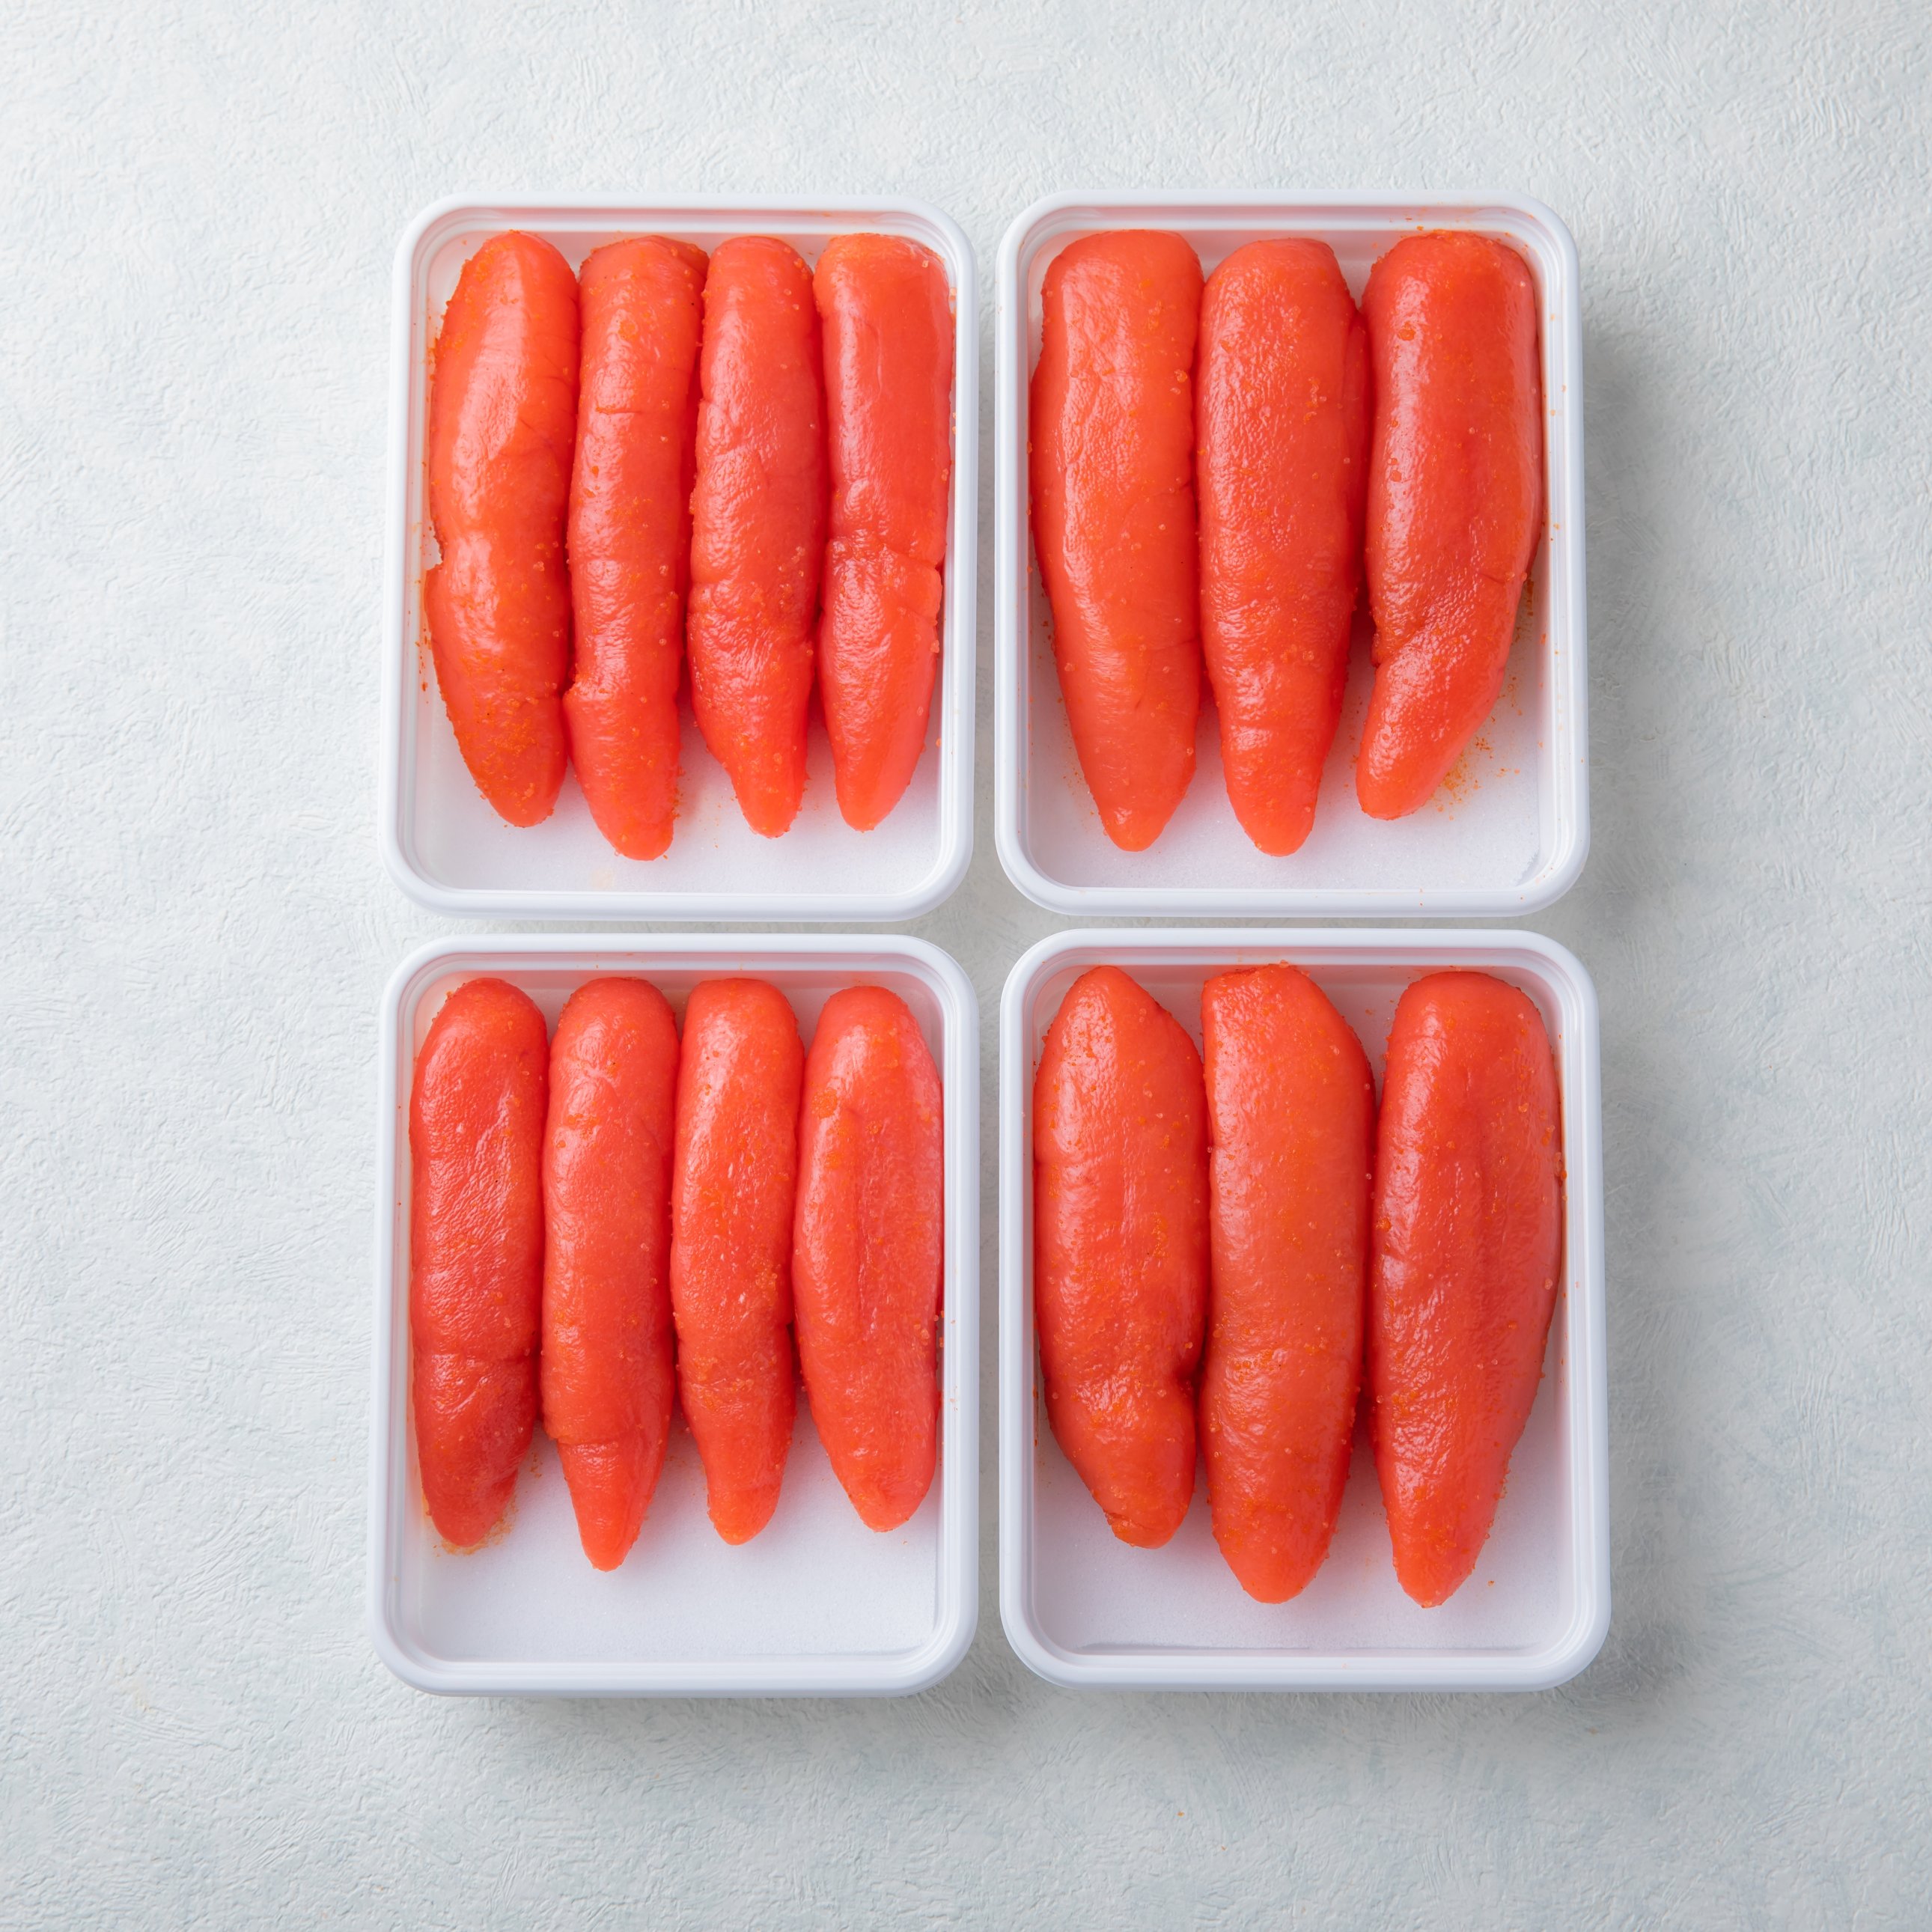 家庭用辛子明太子 160g×4個 食卓に並べやすいよう1回分に小分けしました!食べる分だけ冷蔵庫で解凍し、残りは冷凍庫へ!ご家庭用におすすめの人気商品です